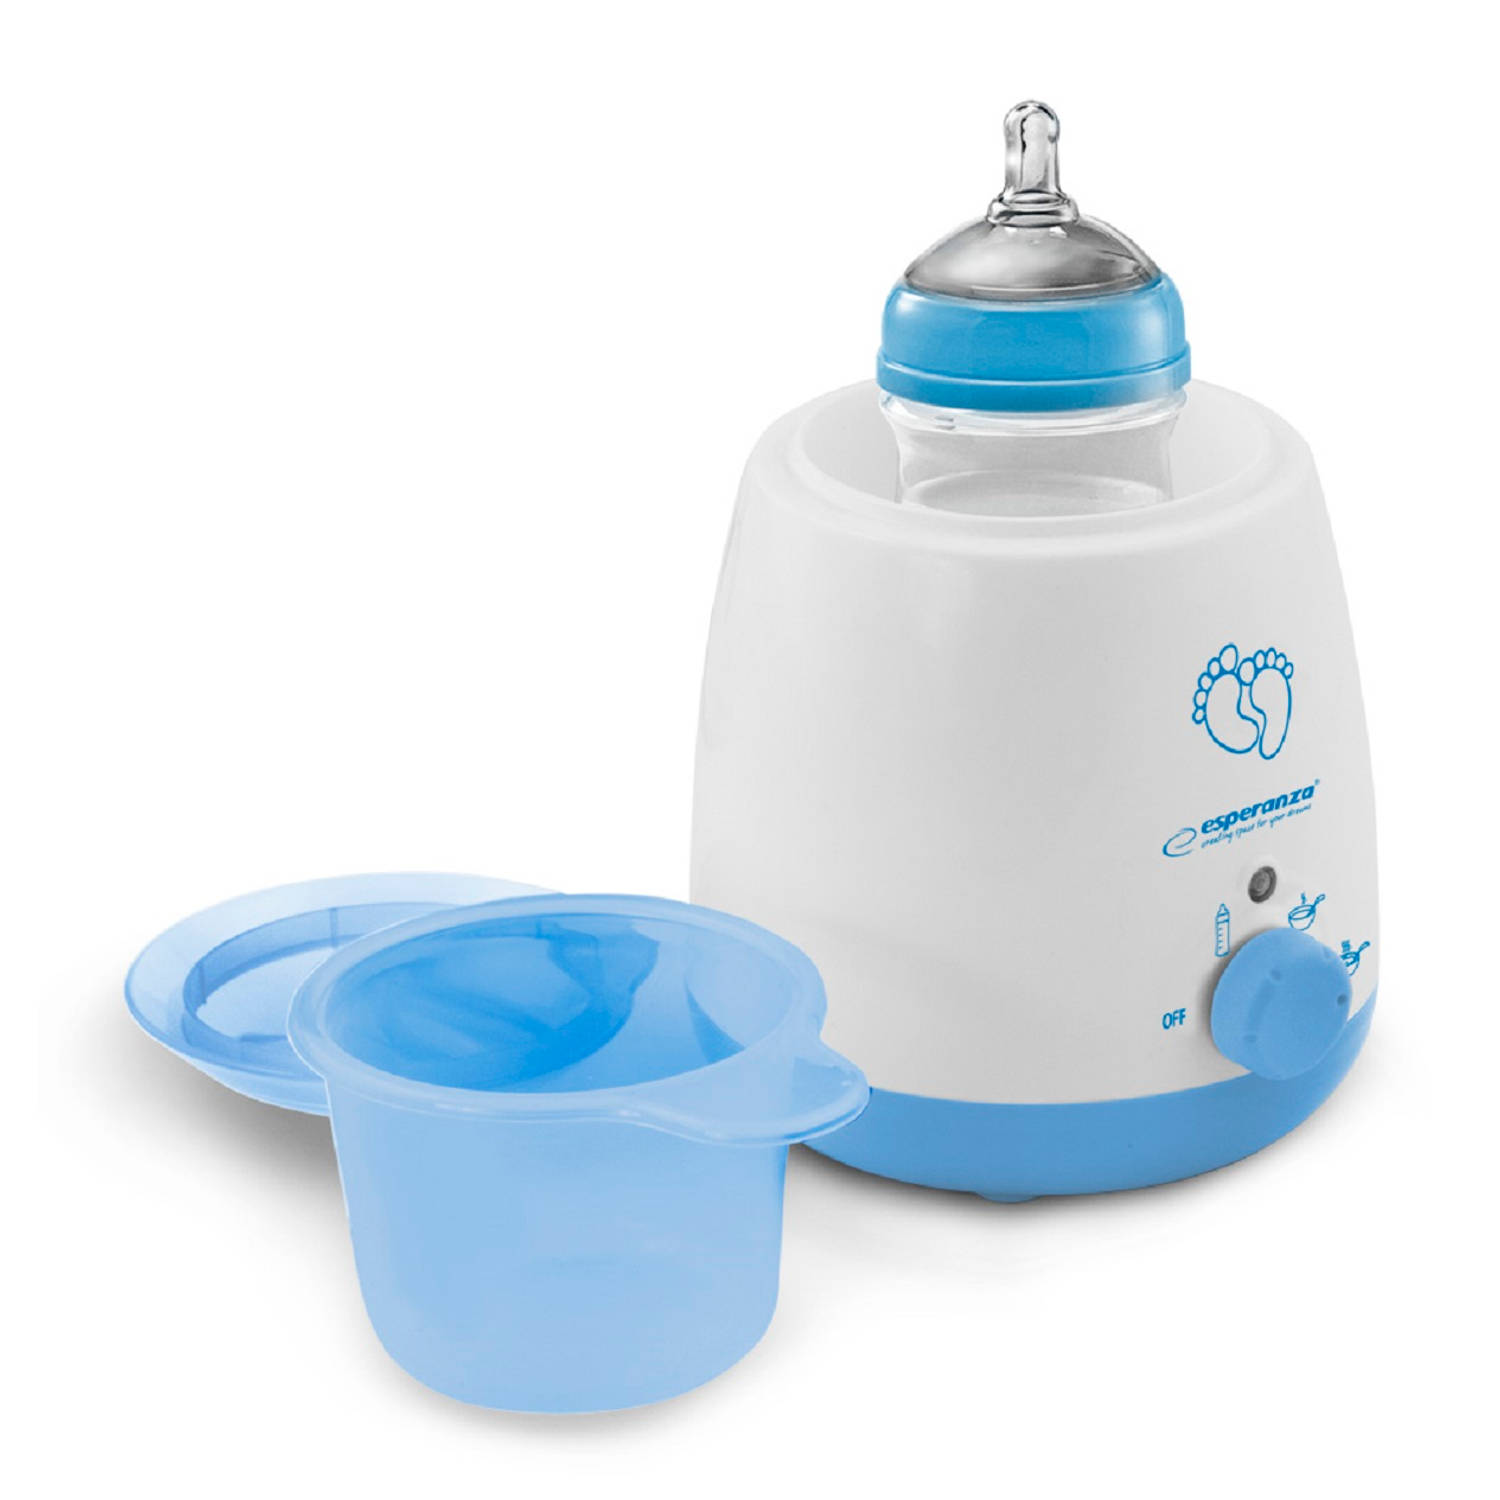 Esperanza Ekb002 Flessenwarmer Voor Iedere Babyfles Wit-blauw